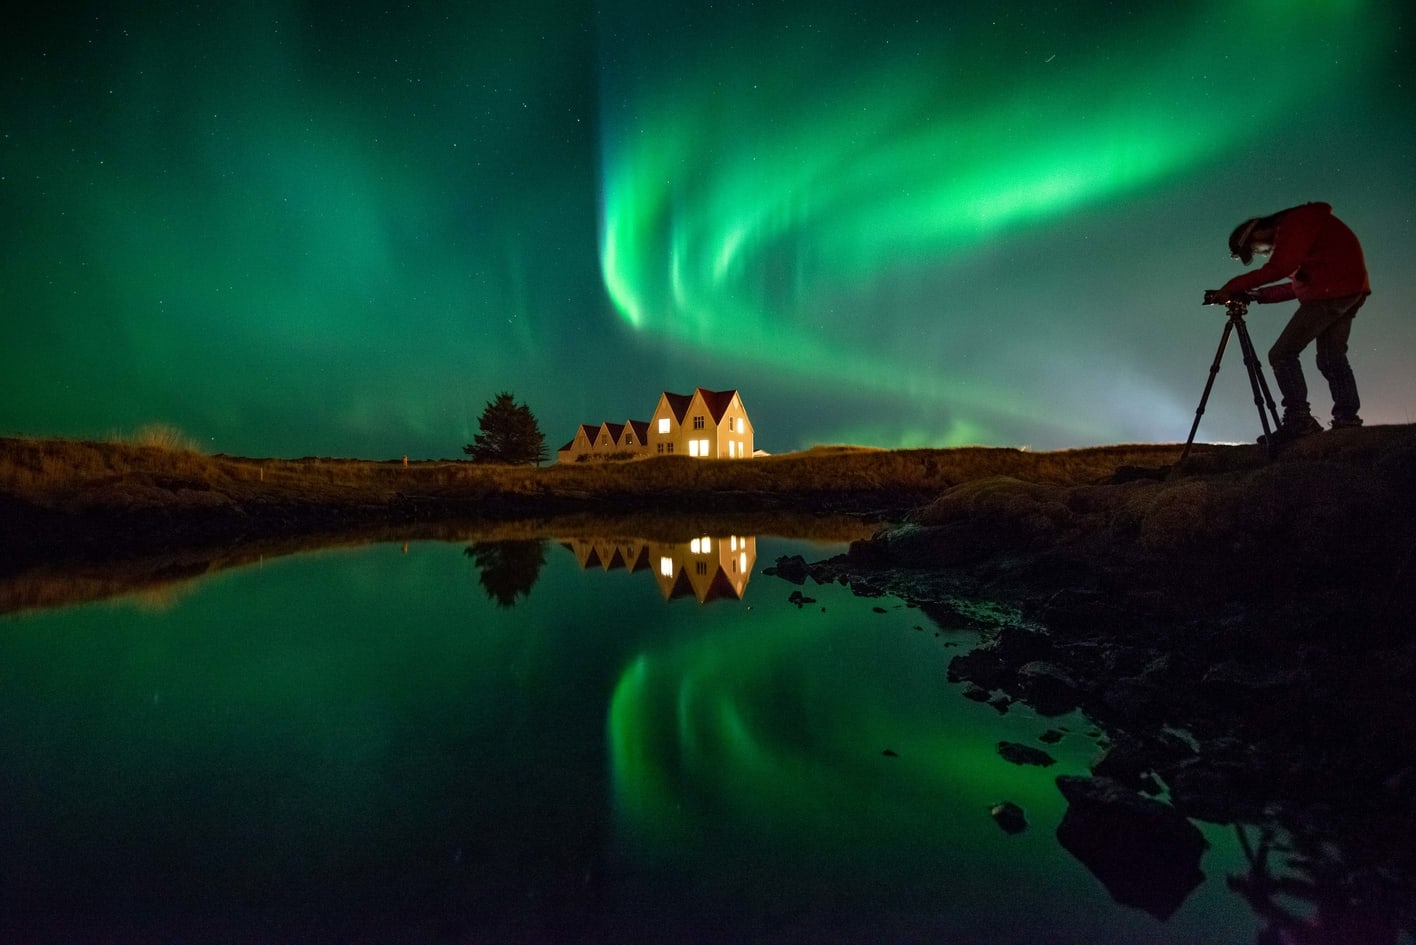 se pueden fotografiar auroras boreales como